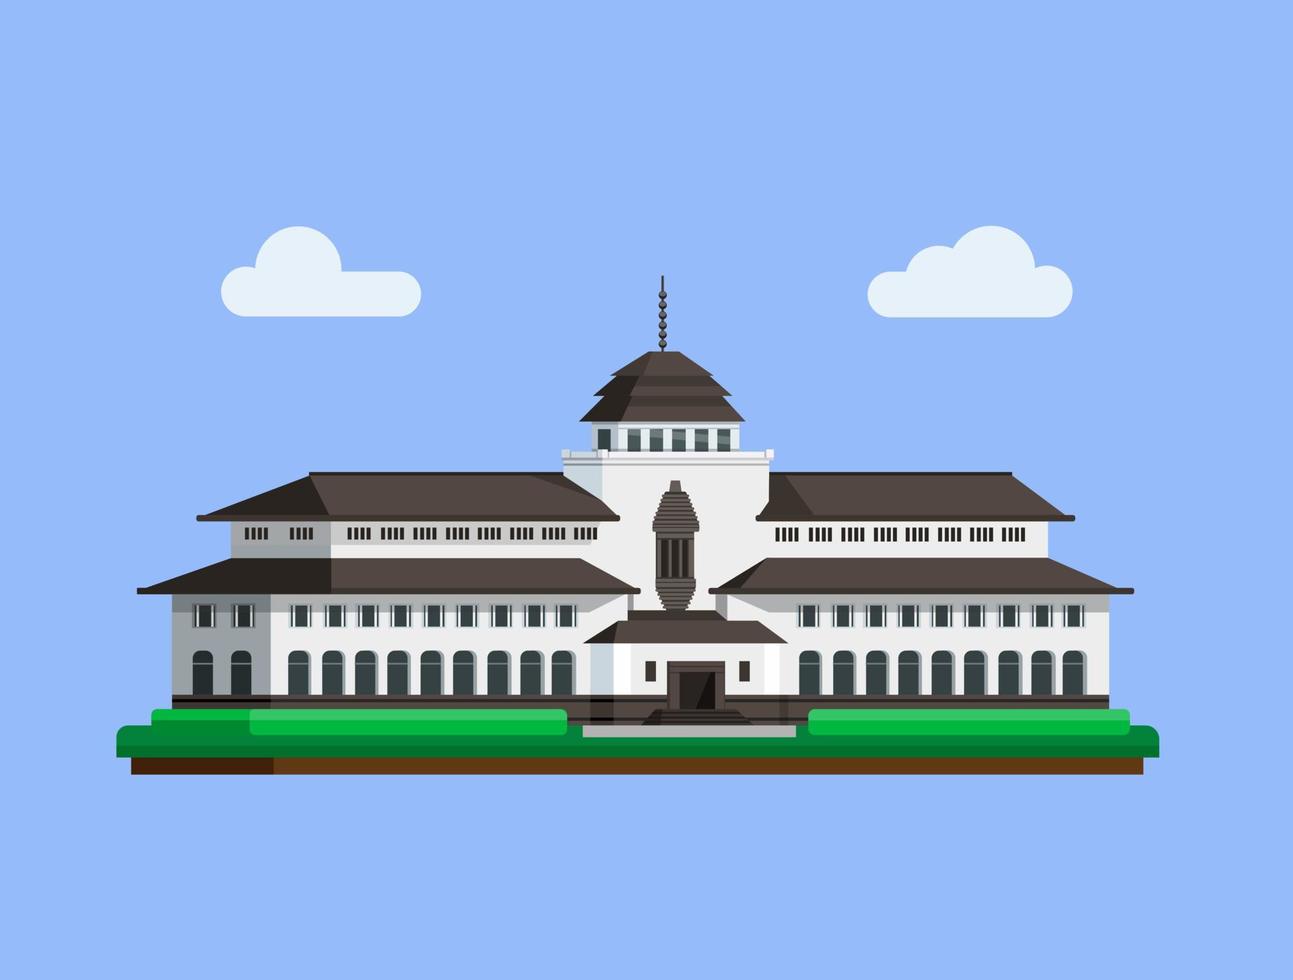 gedung sate is een beroemd gebouworiëntatiepunt uit het concept van bandung, west java, indonesië, in een platte illustratievector vector